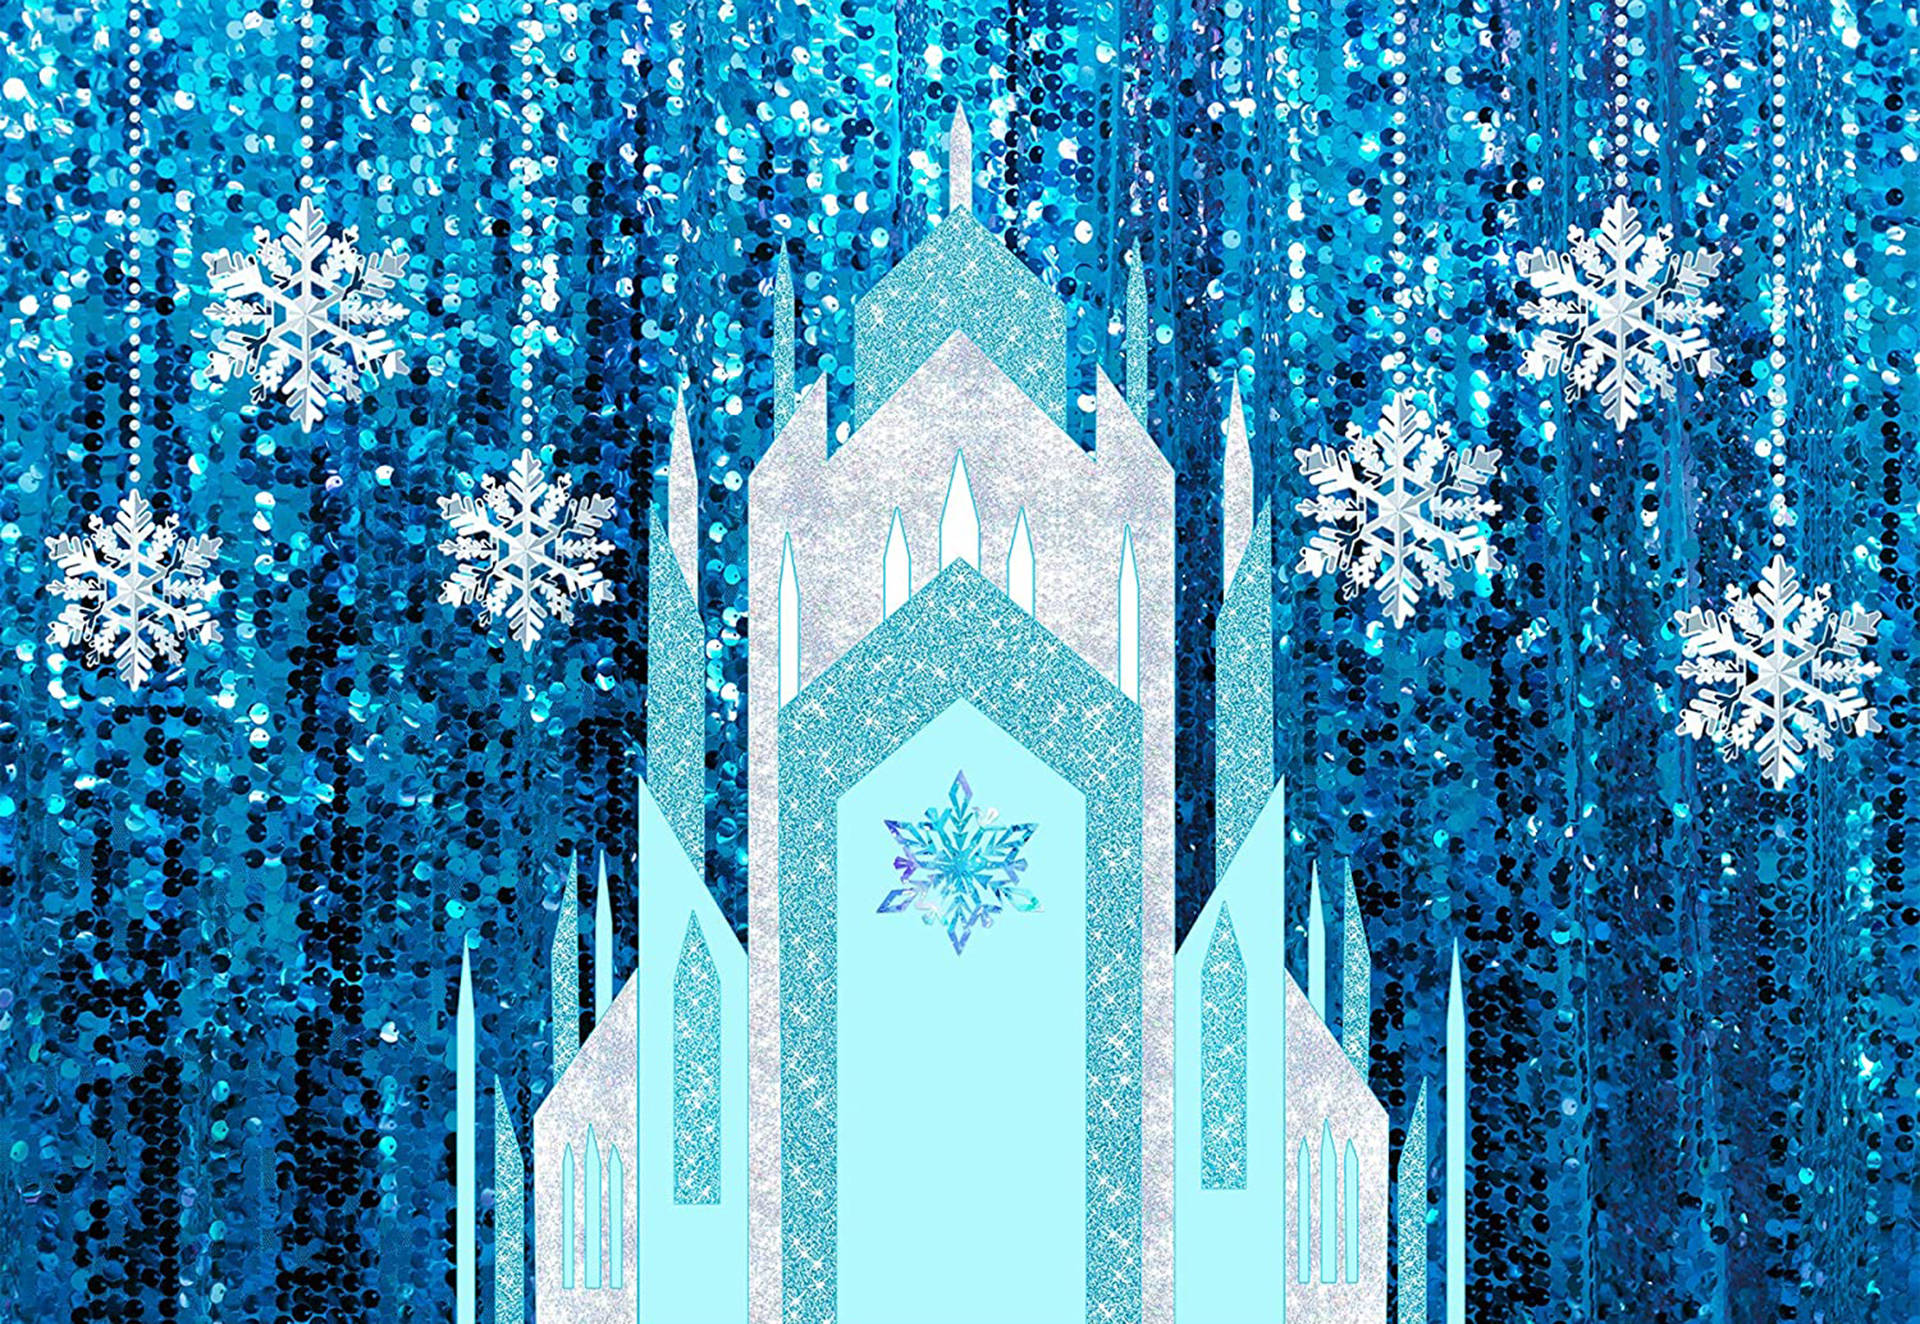 Frozen Castle Snowflakes